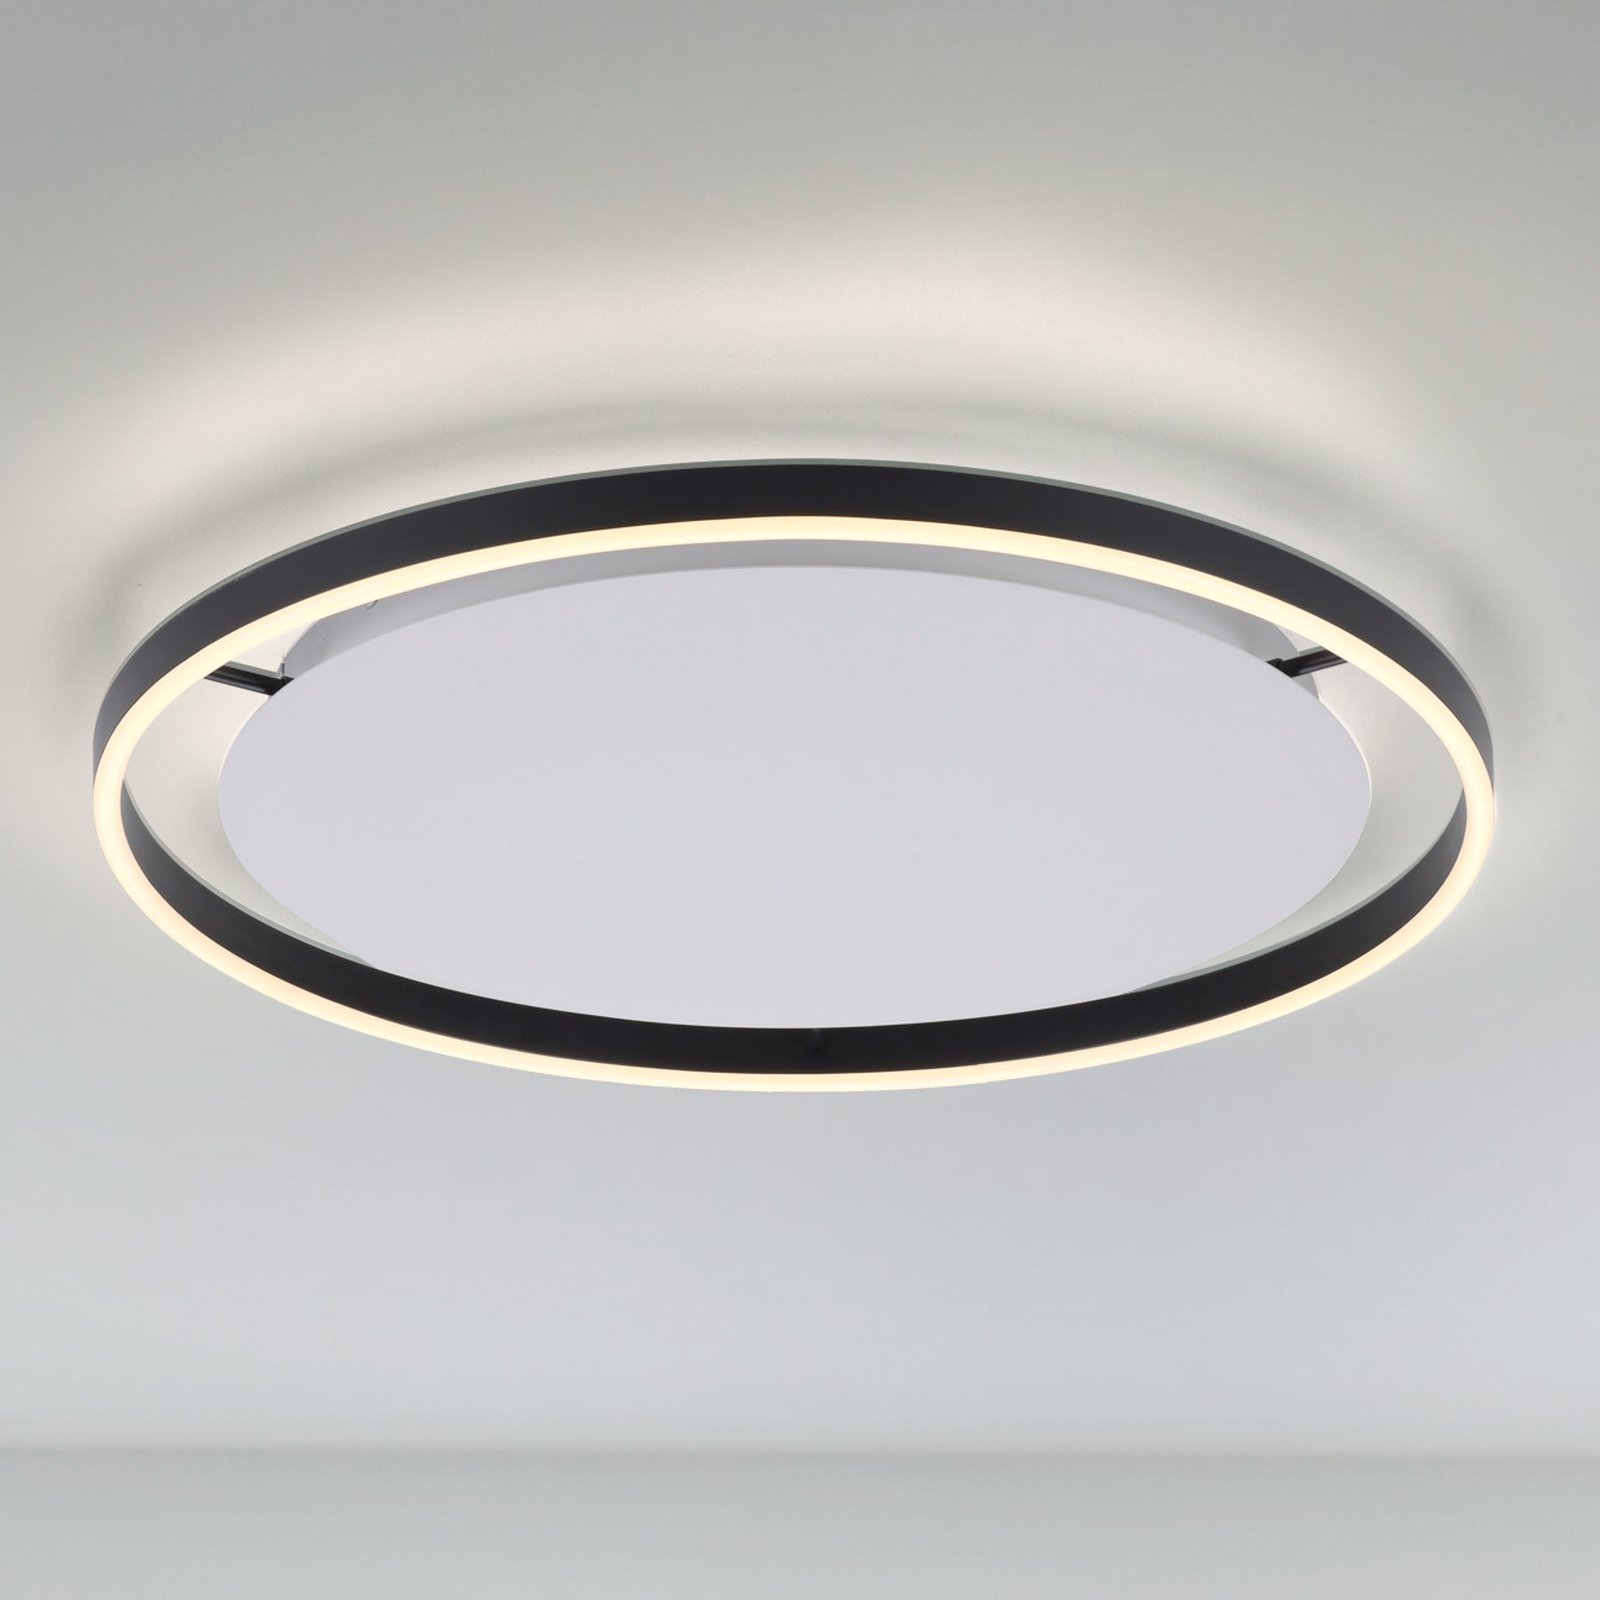 LED-taklampa Ritus, Ø 58,5 cm, antracit